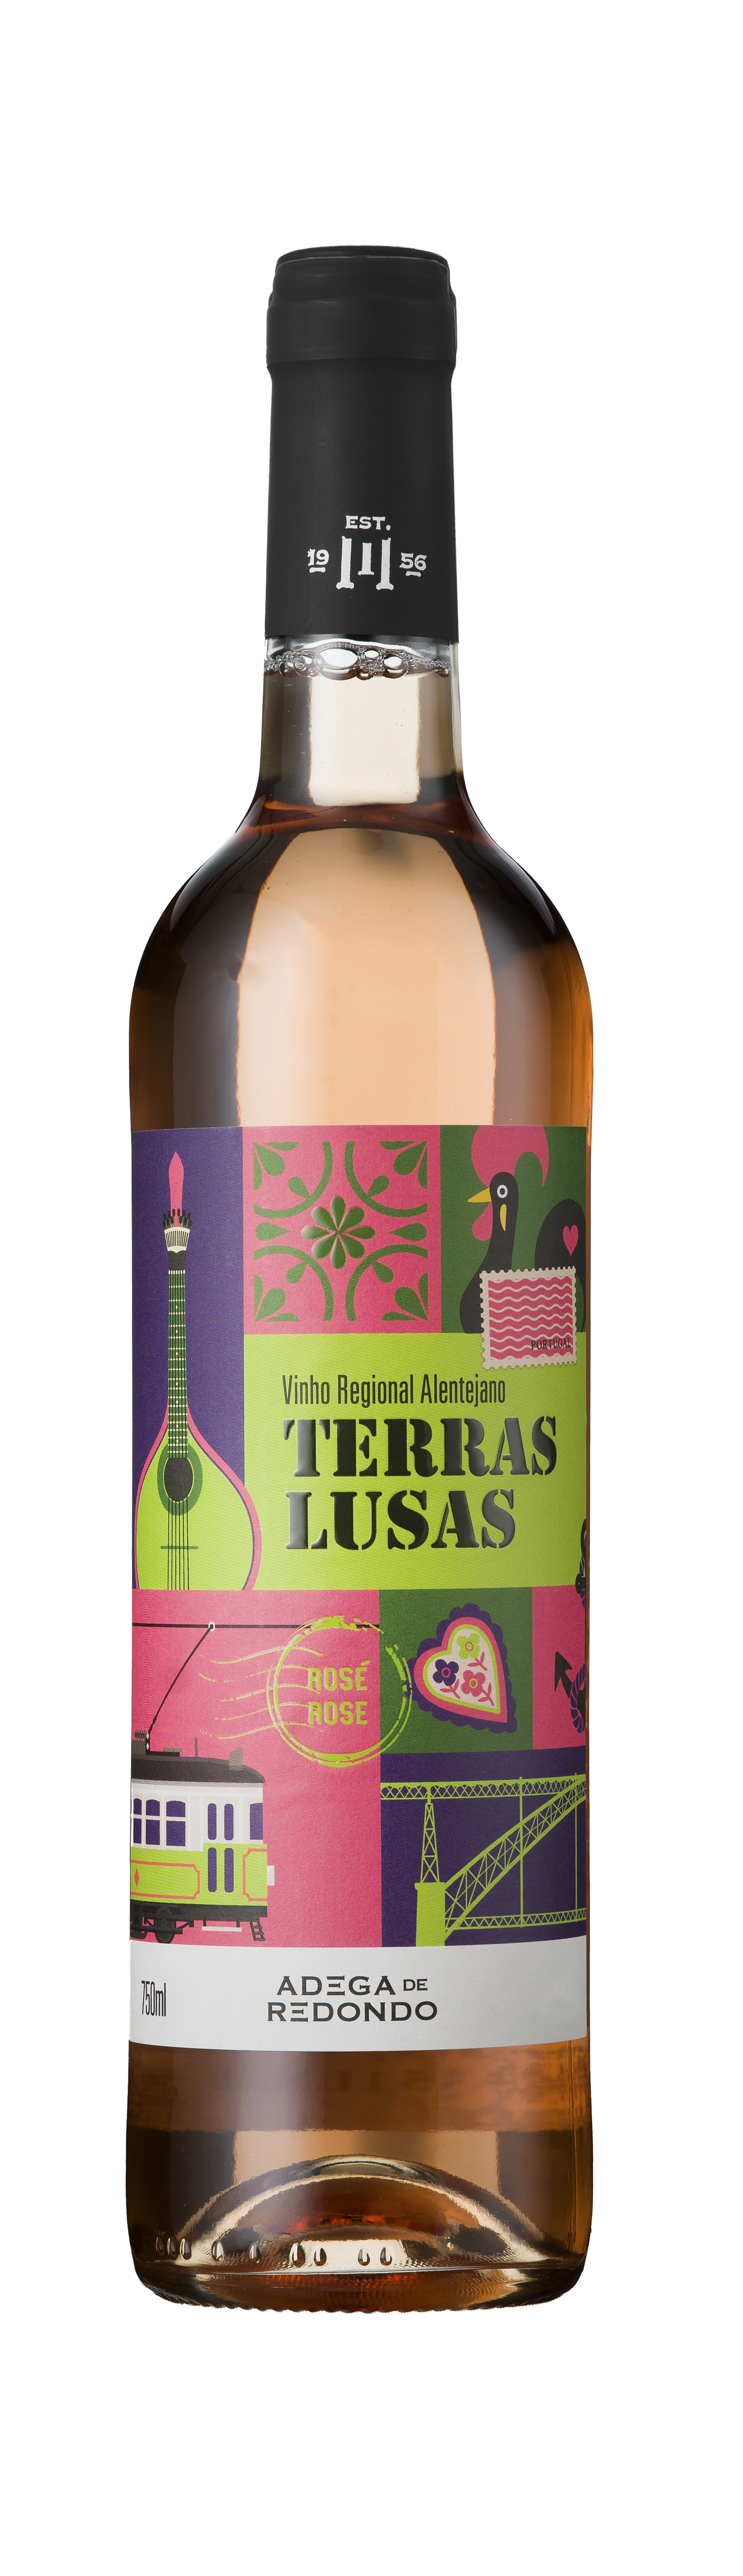 Bottle shot - Adega de Redondo, Terras Lusas Rosé, Vinho Regional Alentejano, Portugal